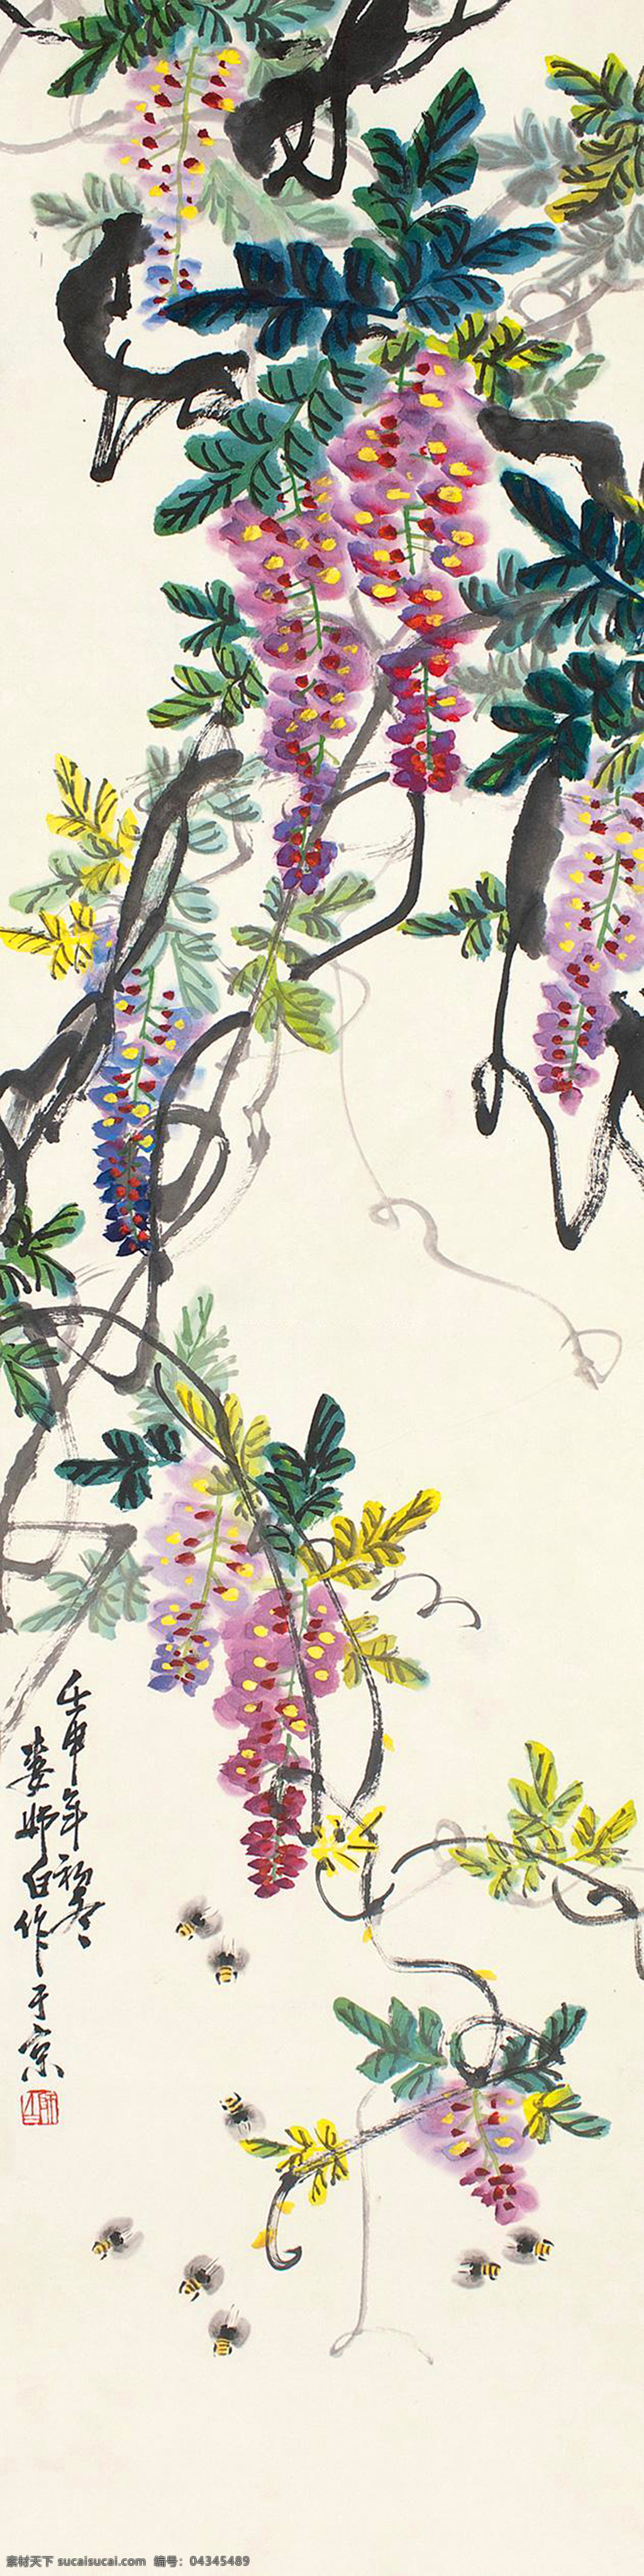 紫藤蜜蜂 娄师白 国画 紫藤 蜜蜂 写意 水墨画 花鸟 中国画 绘画书法 文化艺术